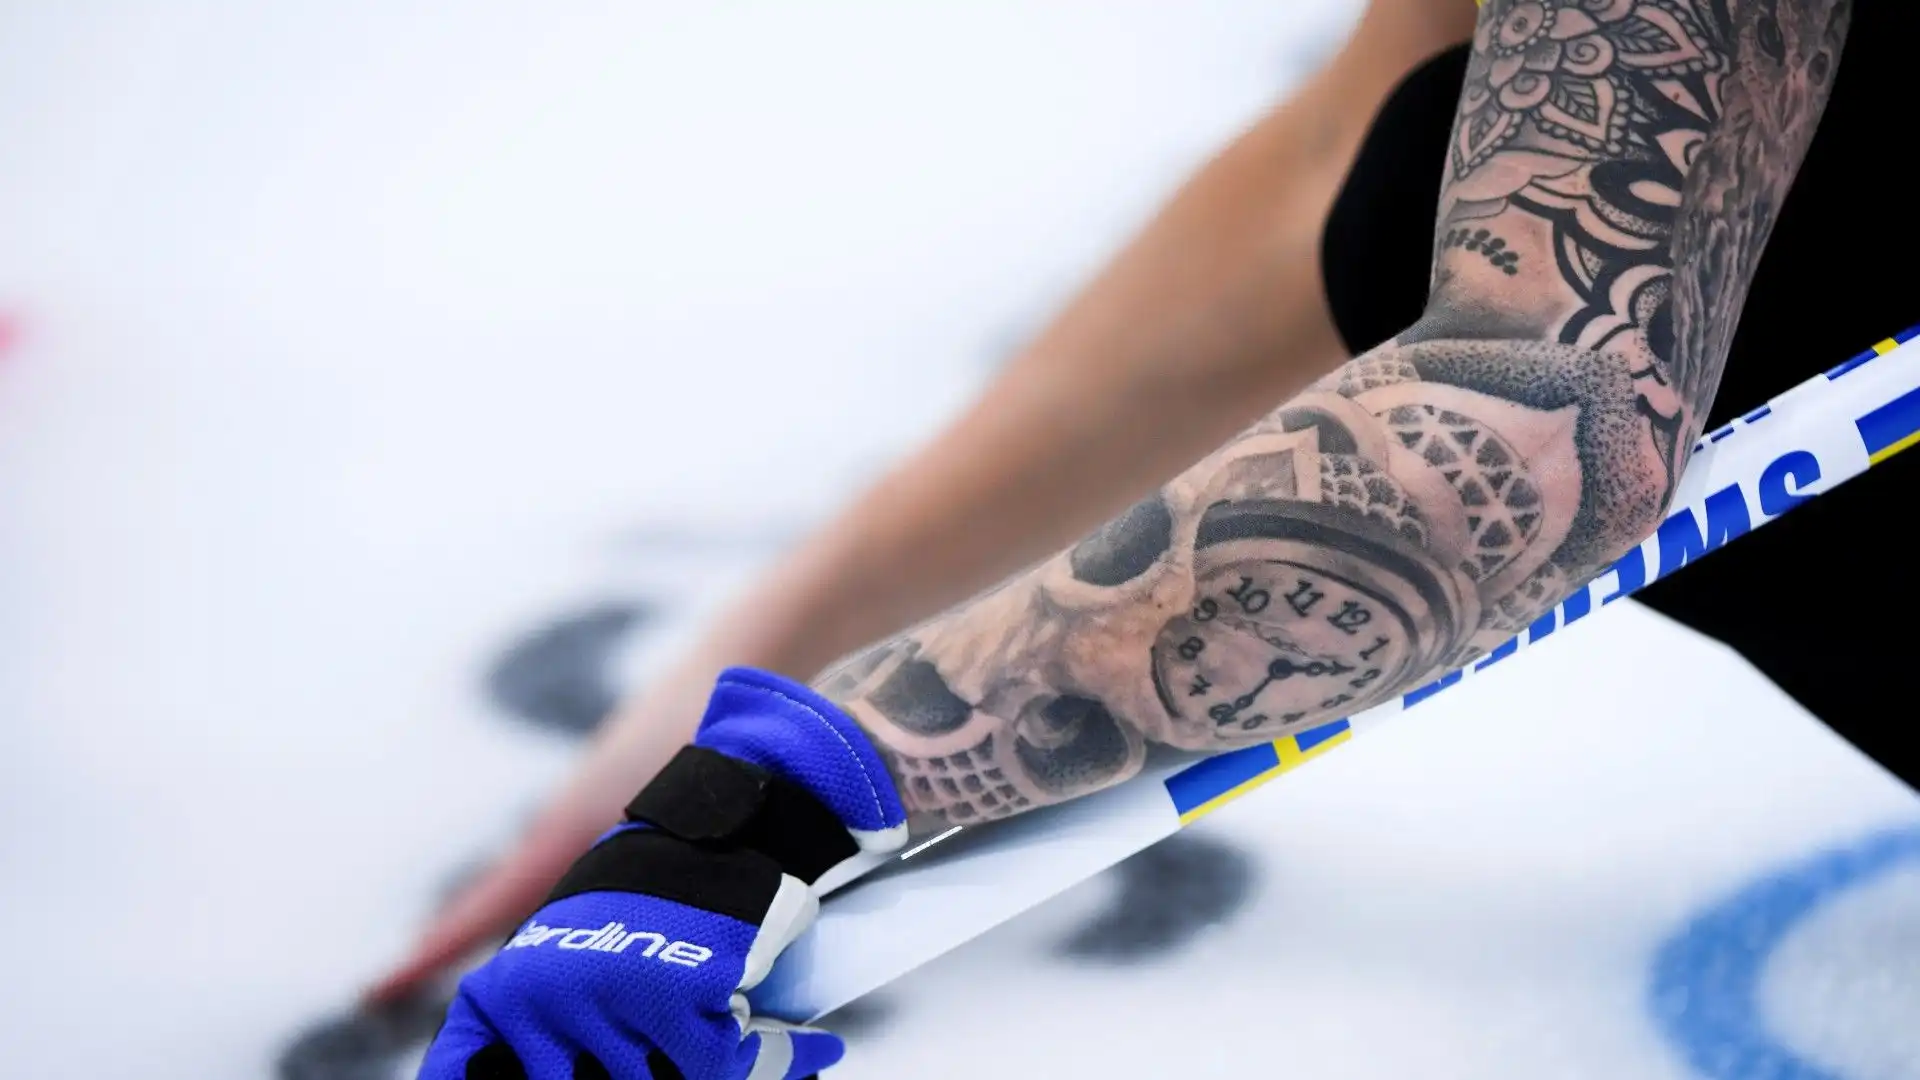 Sofia è una delle atlete più tatuate al mondo